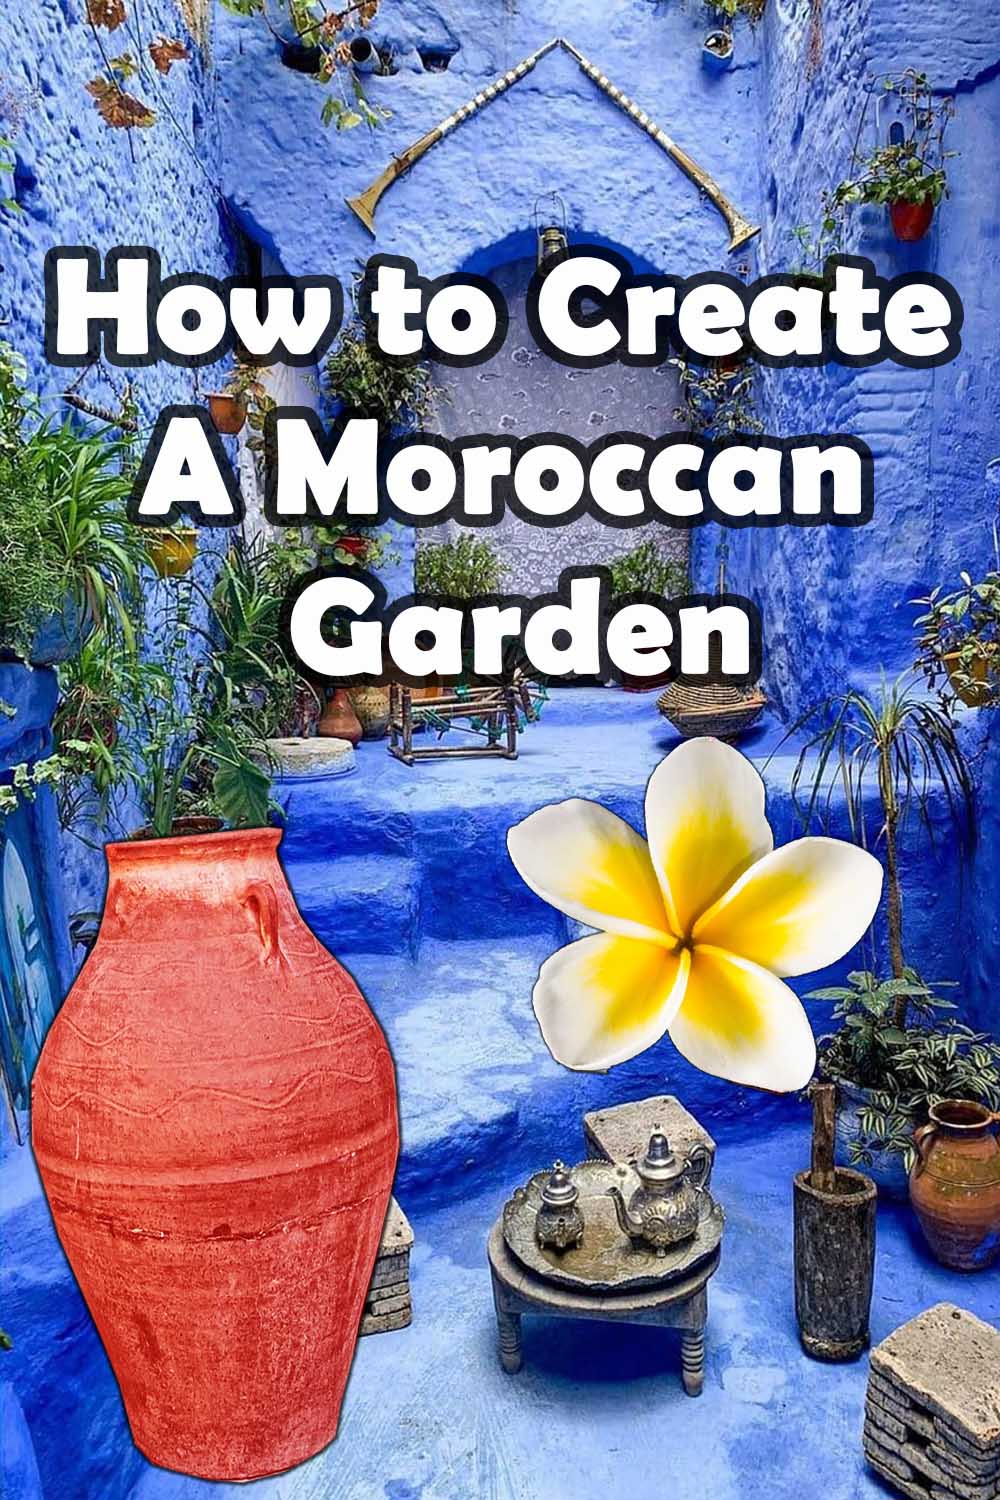 How to create a Moroccan garden